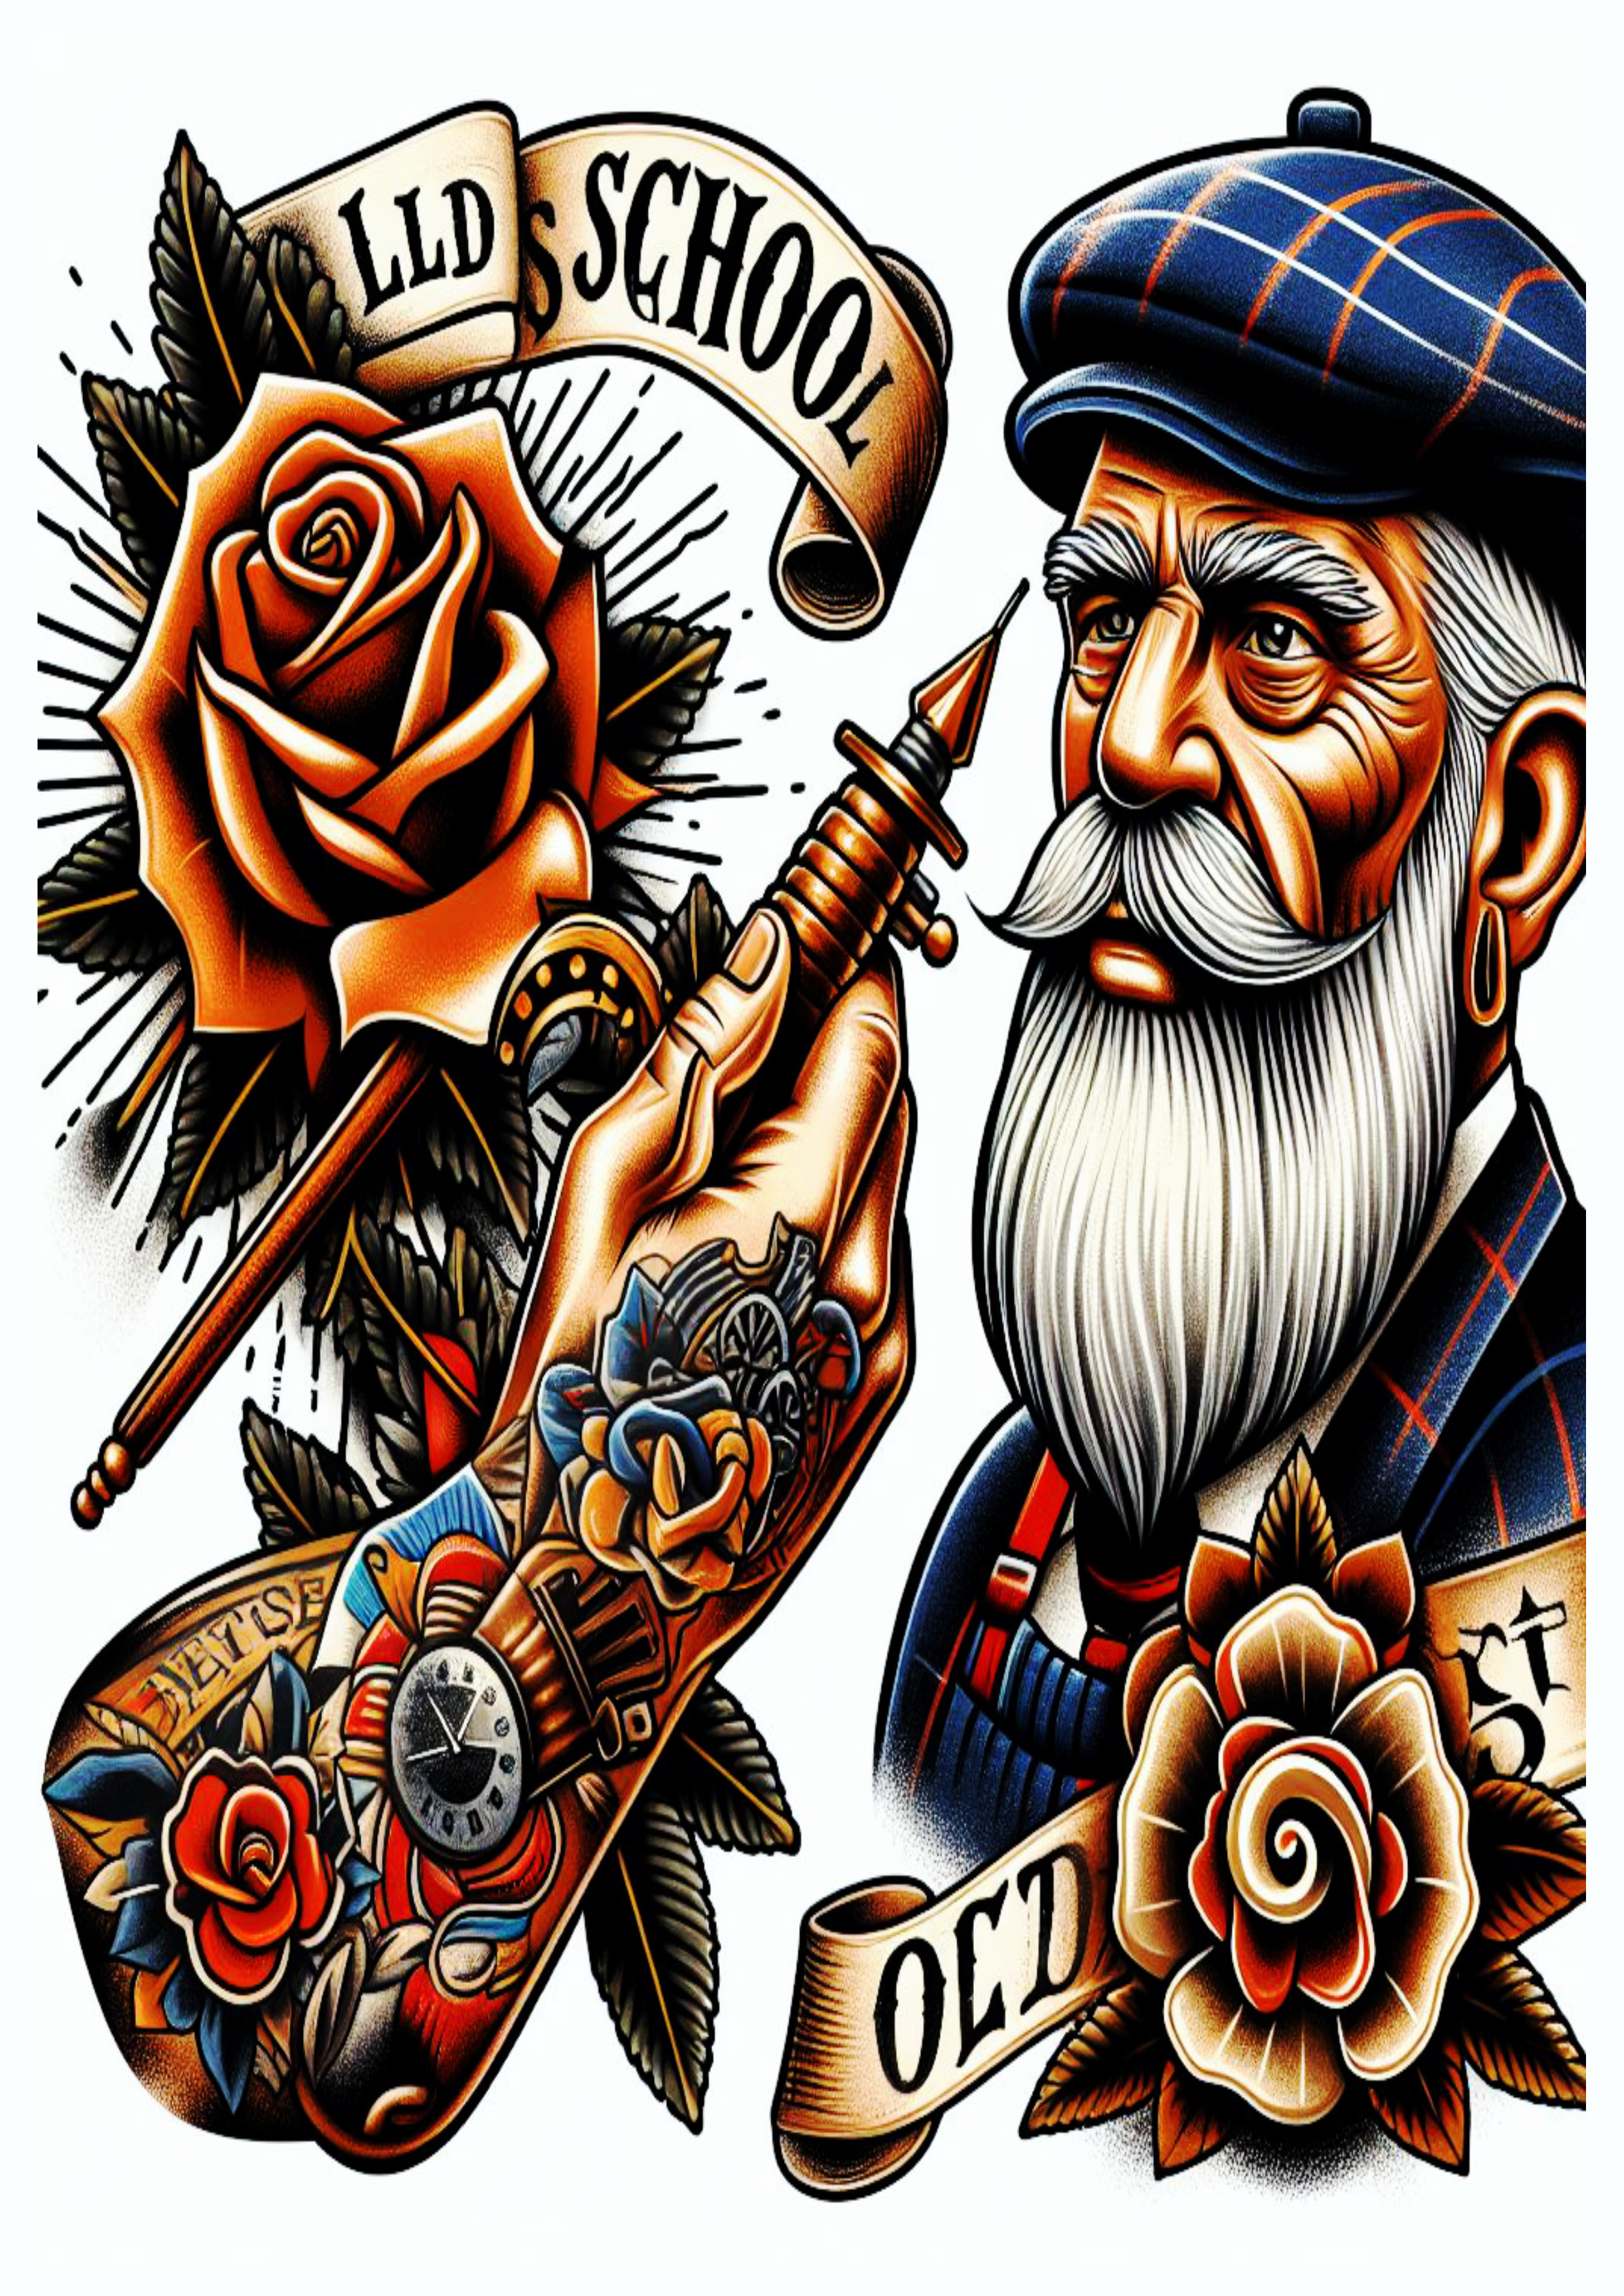 Ideias variadas para tatuagens old school artes conceituais png idoso barbudo arte conceitual